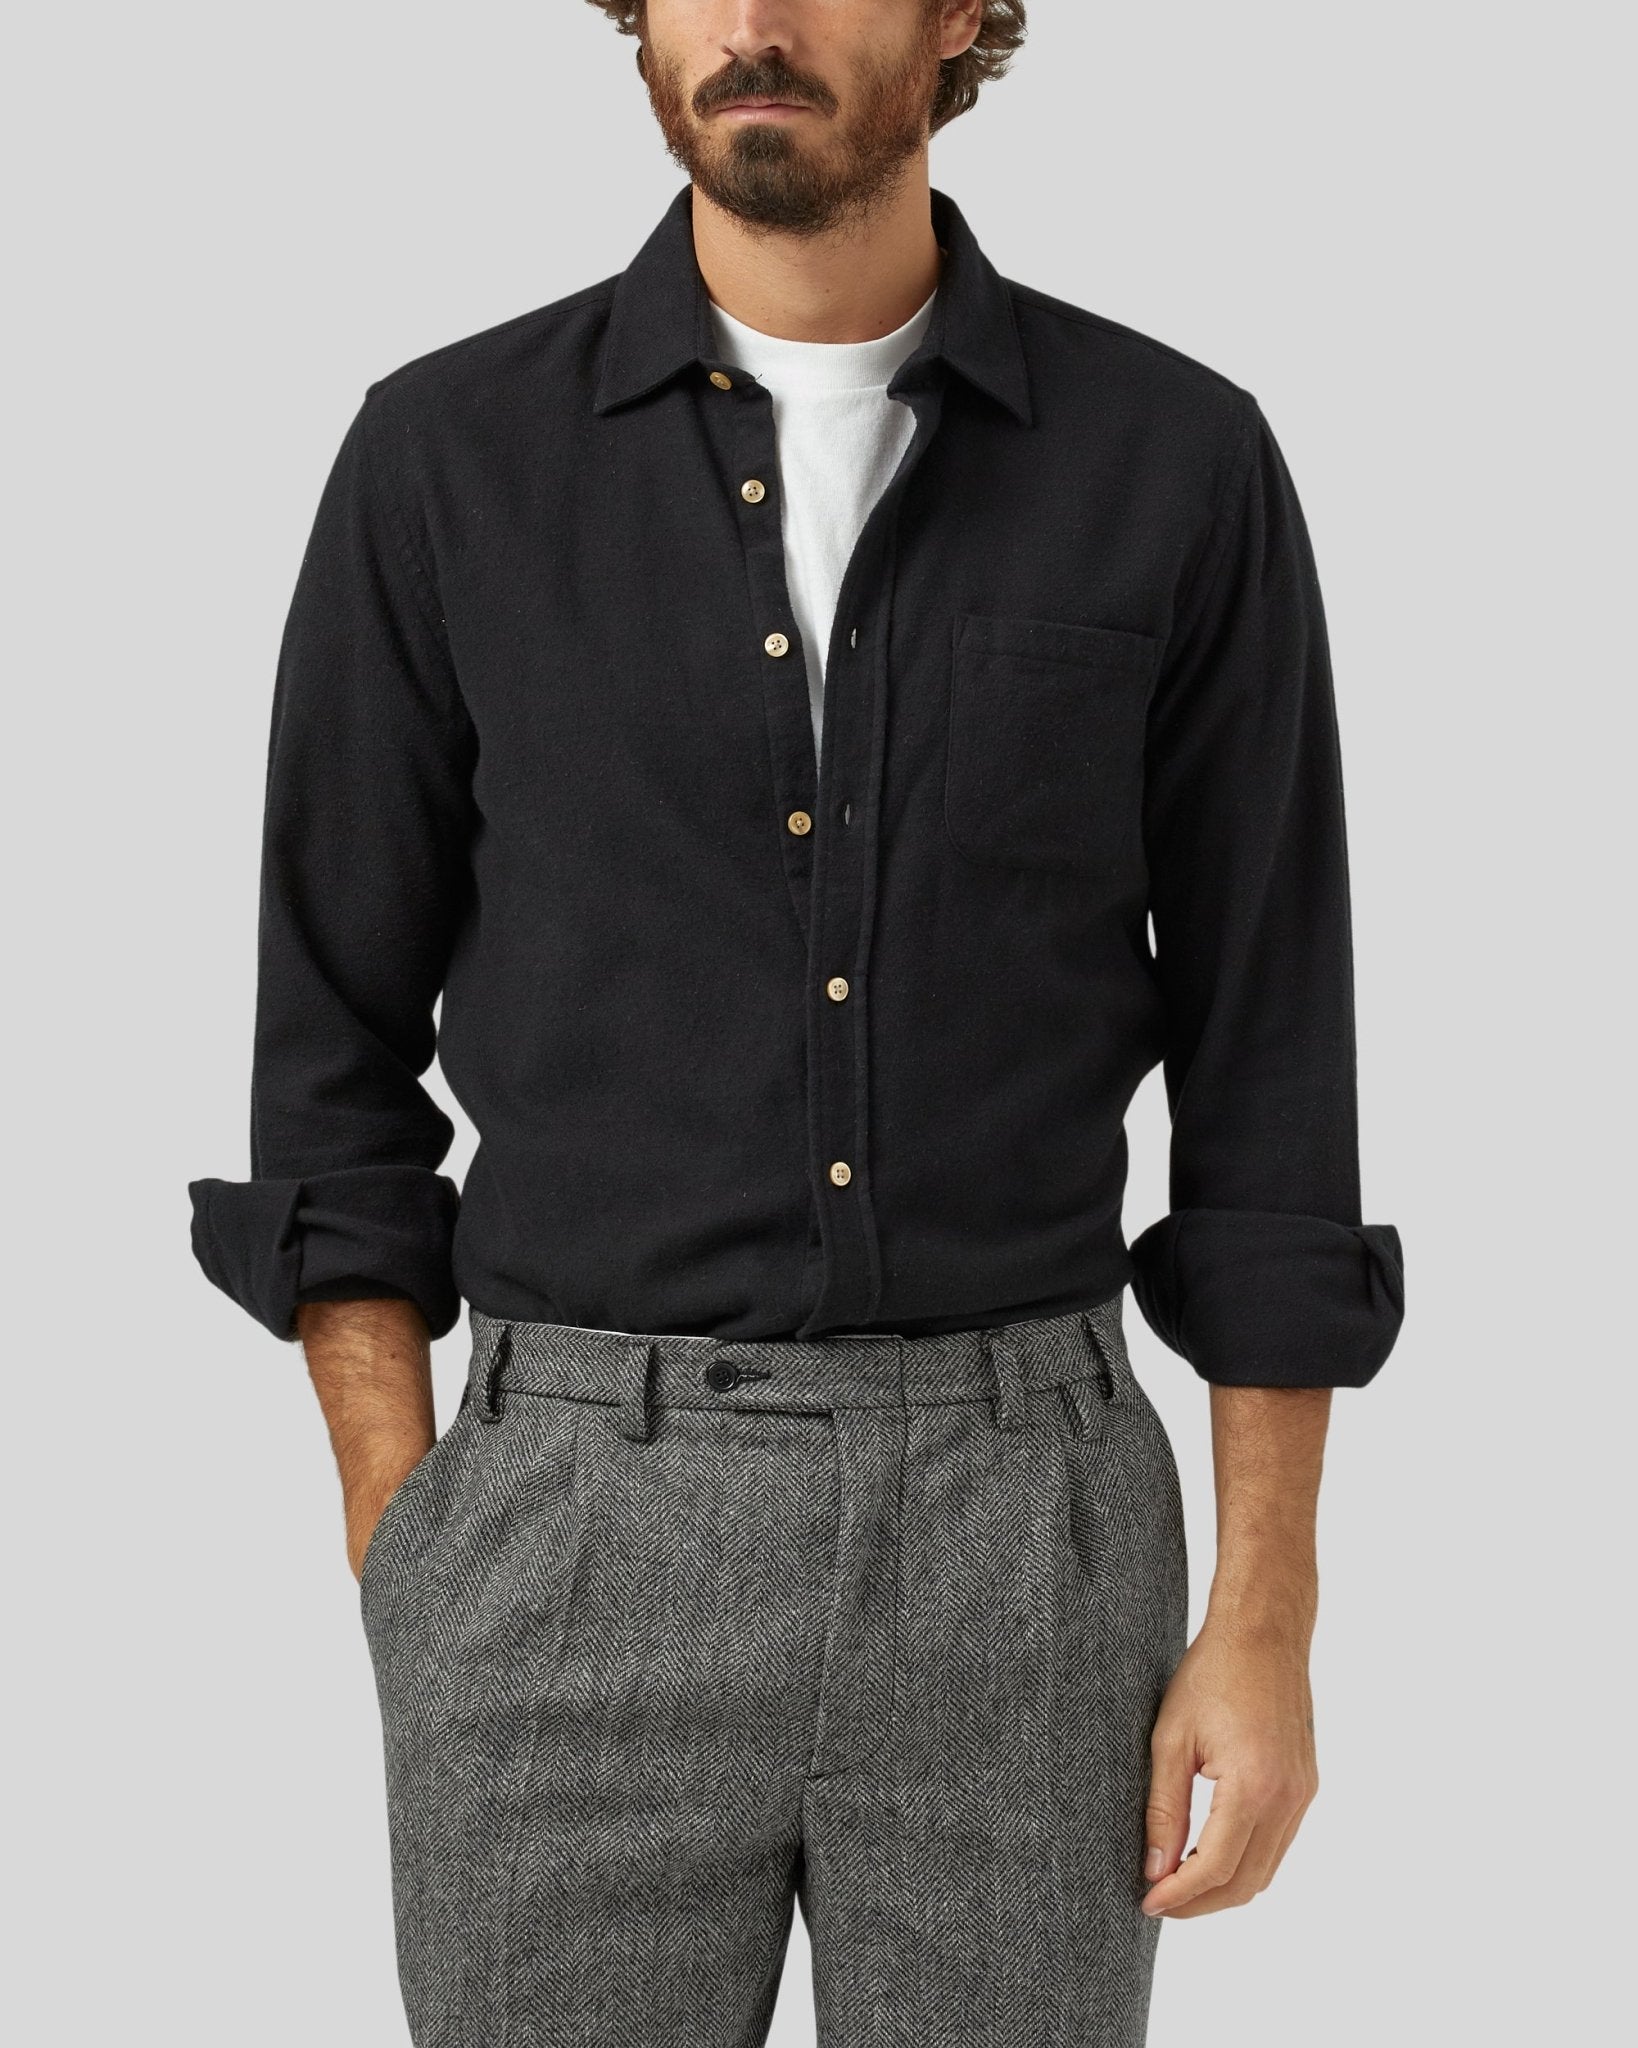 Teca Flannel Shirt - Portuguese Flannel - Danali - TECA-BLACK-M